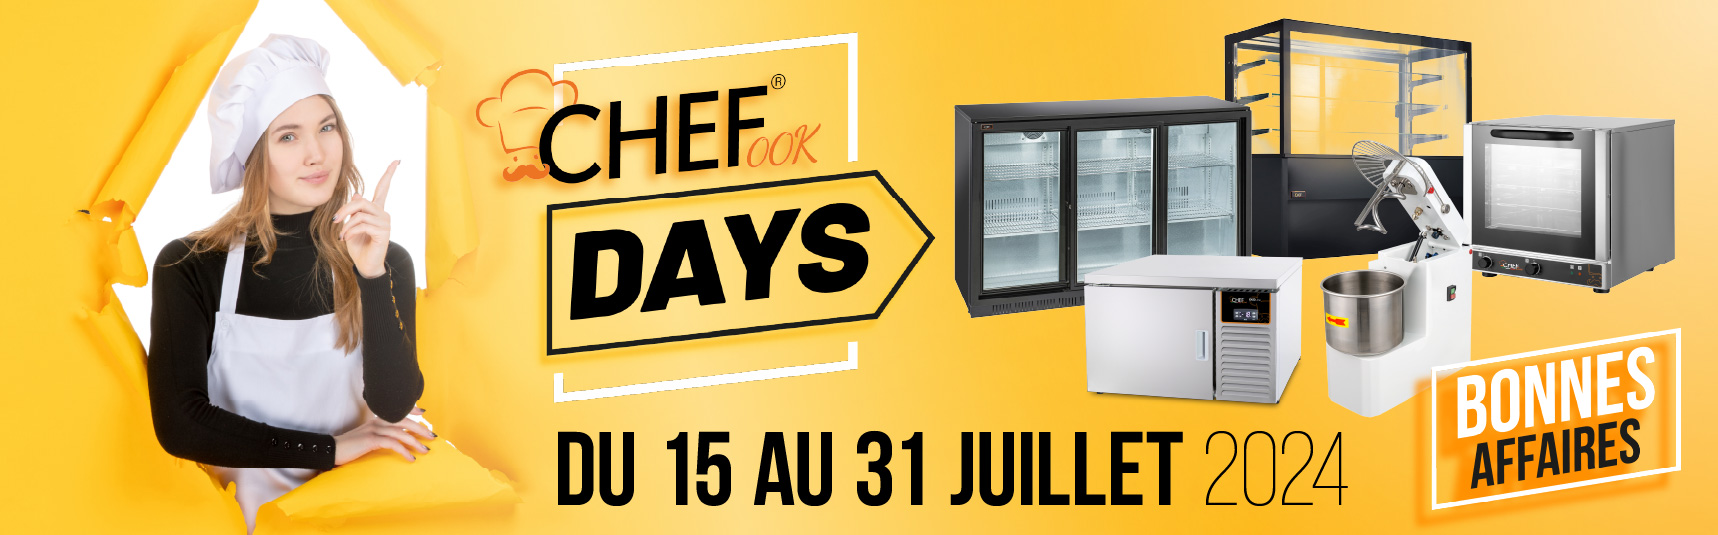 ChefOok Days: 15-31 Juillet - 15 jours de réductions irrésistibles!